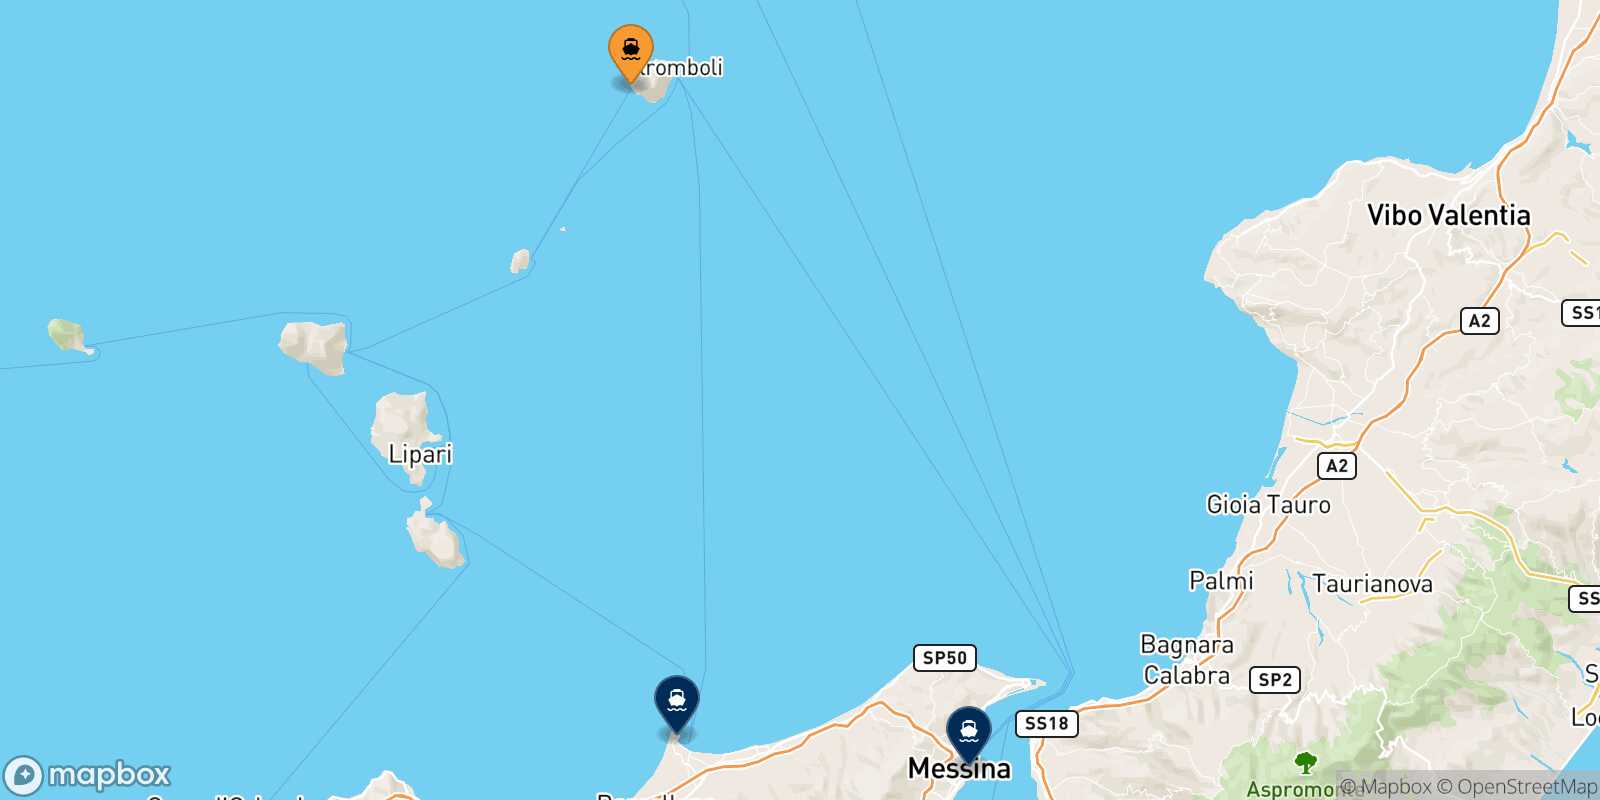 Mappa delle destinazioni raggiungibili da Ginostra (Stromboli)